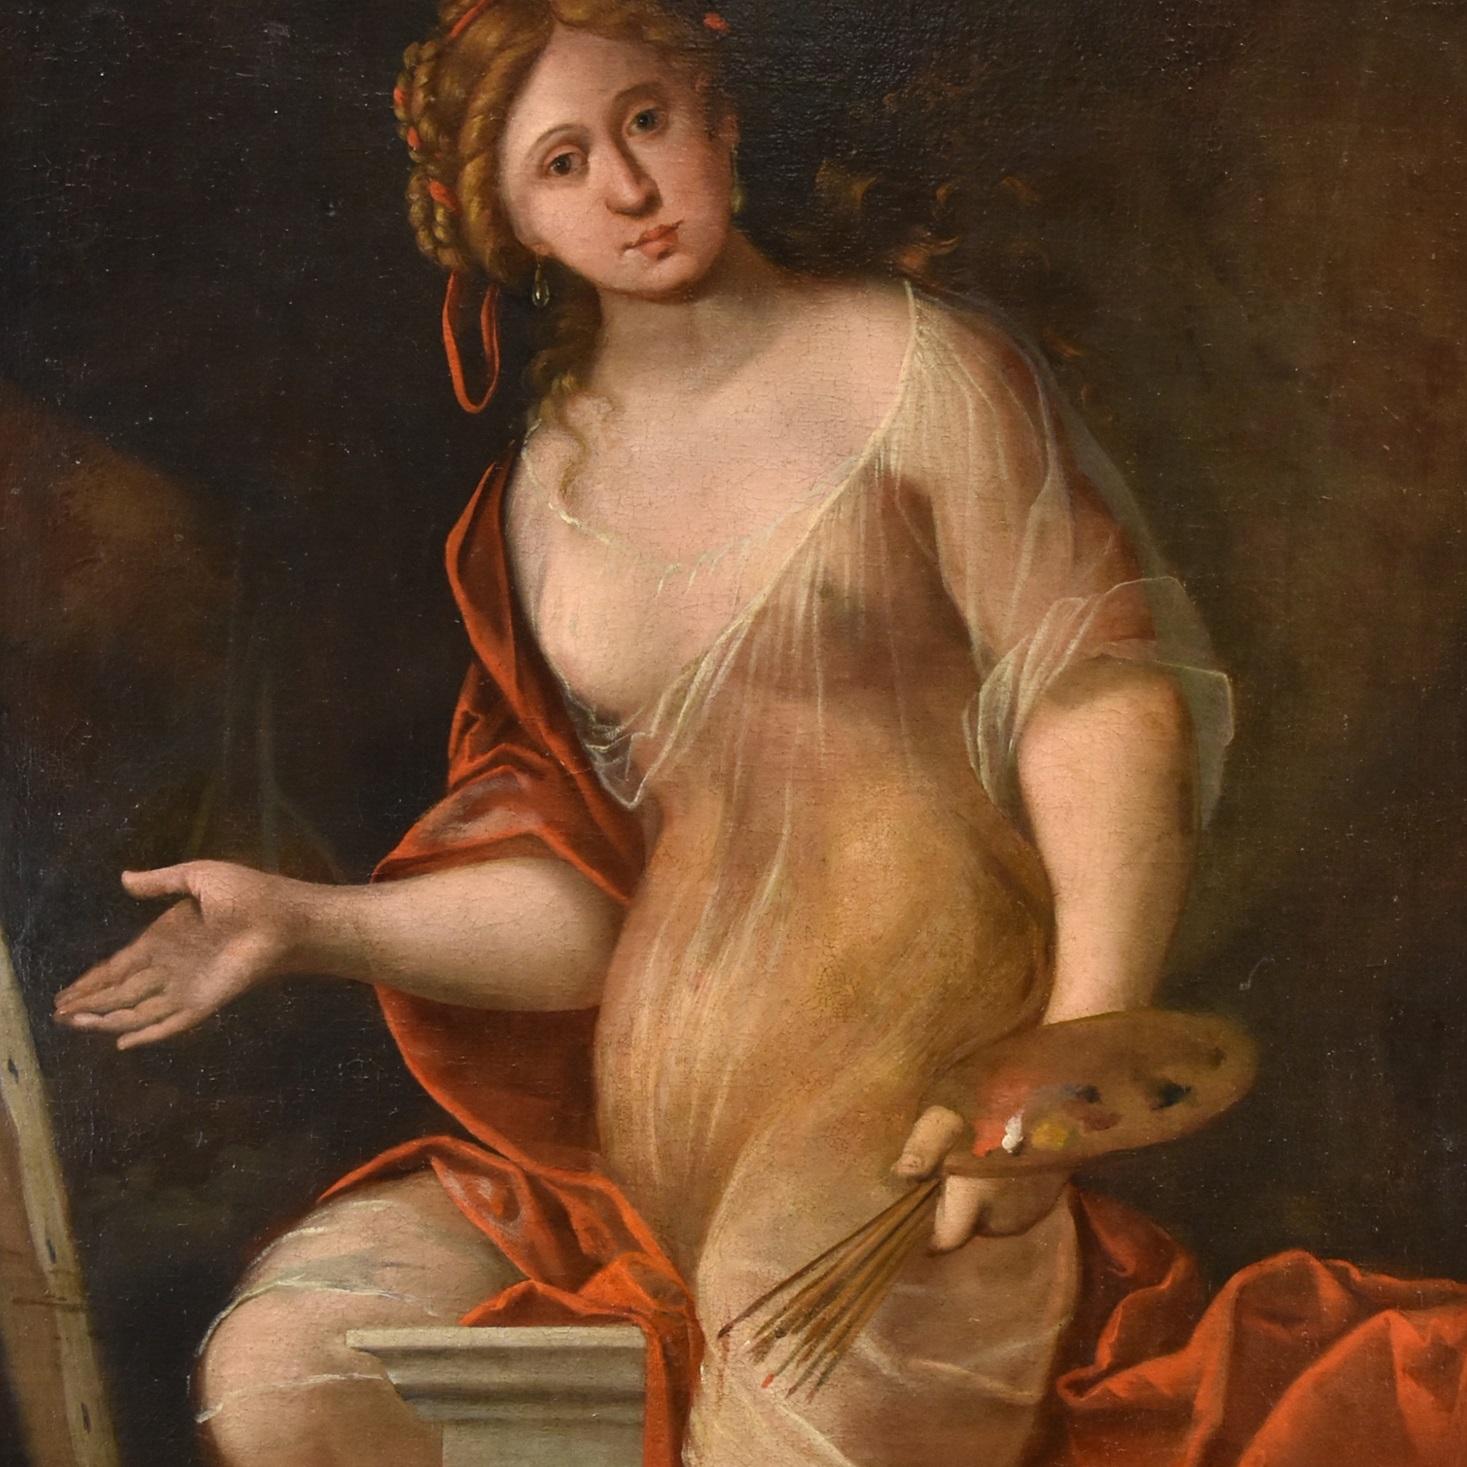 Terwesten Frau Allegory Kunstgemälde Öl auf Leinwand 17/18. Jahrhundert Alter Meister  (Alte Meister), Painting, von Mattheus Terwesten (the Hague, 1670 - 1757)